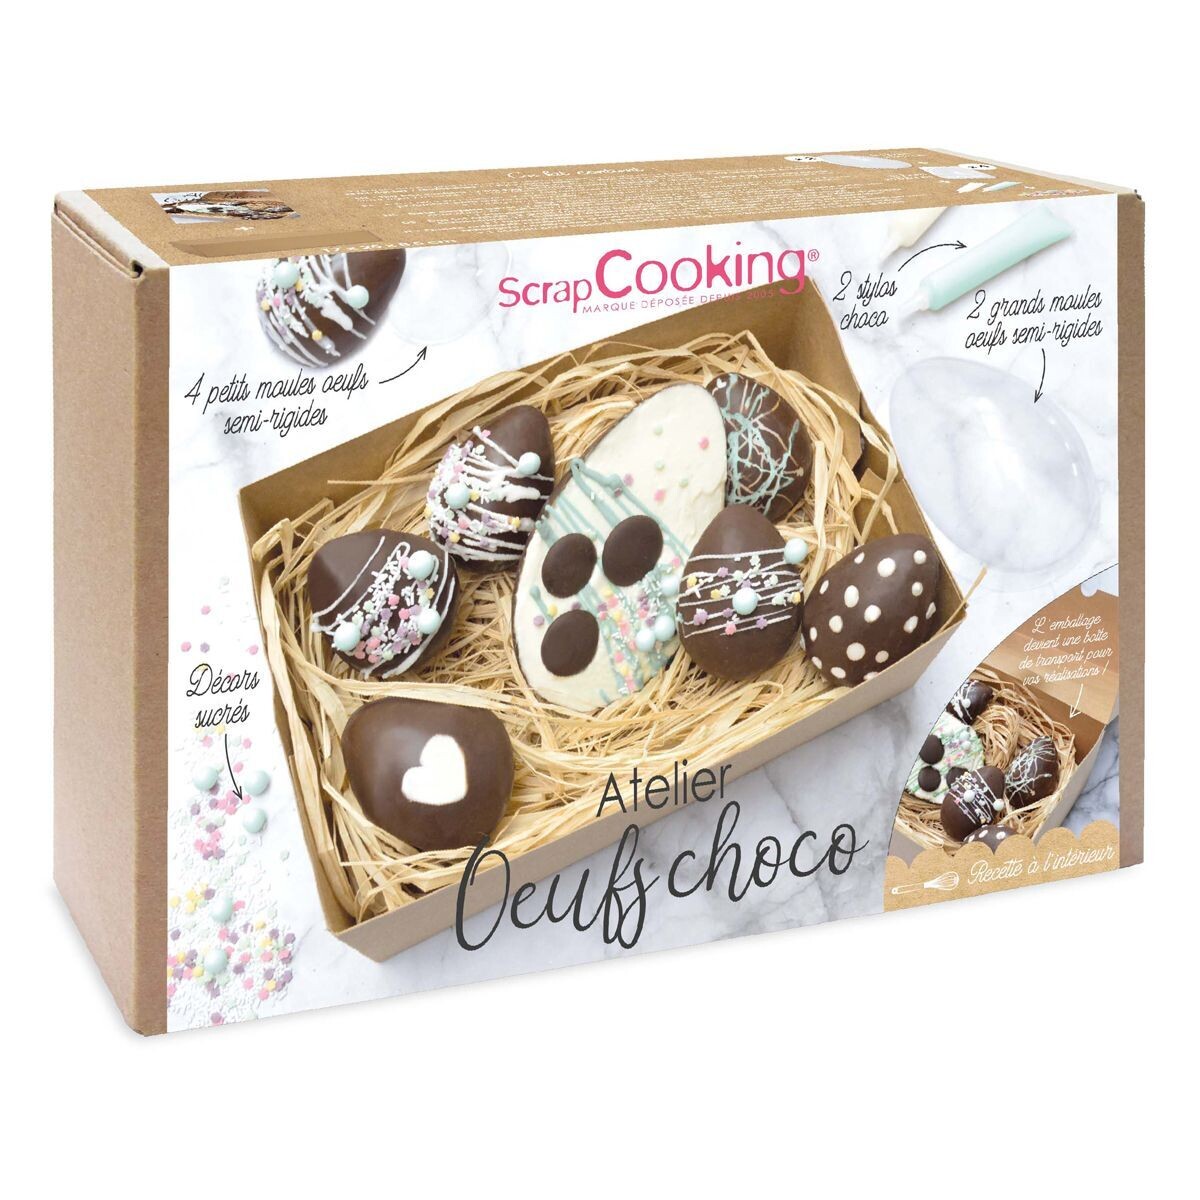 ζ24 04 SALE!!! ScrapCooking Chocolate Egg Workshop Σετ 10τμχ - Σετ κατασκευής σοκολατένιων πασχαλινών αυγών